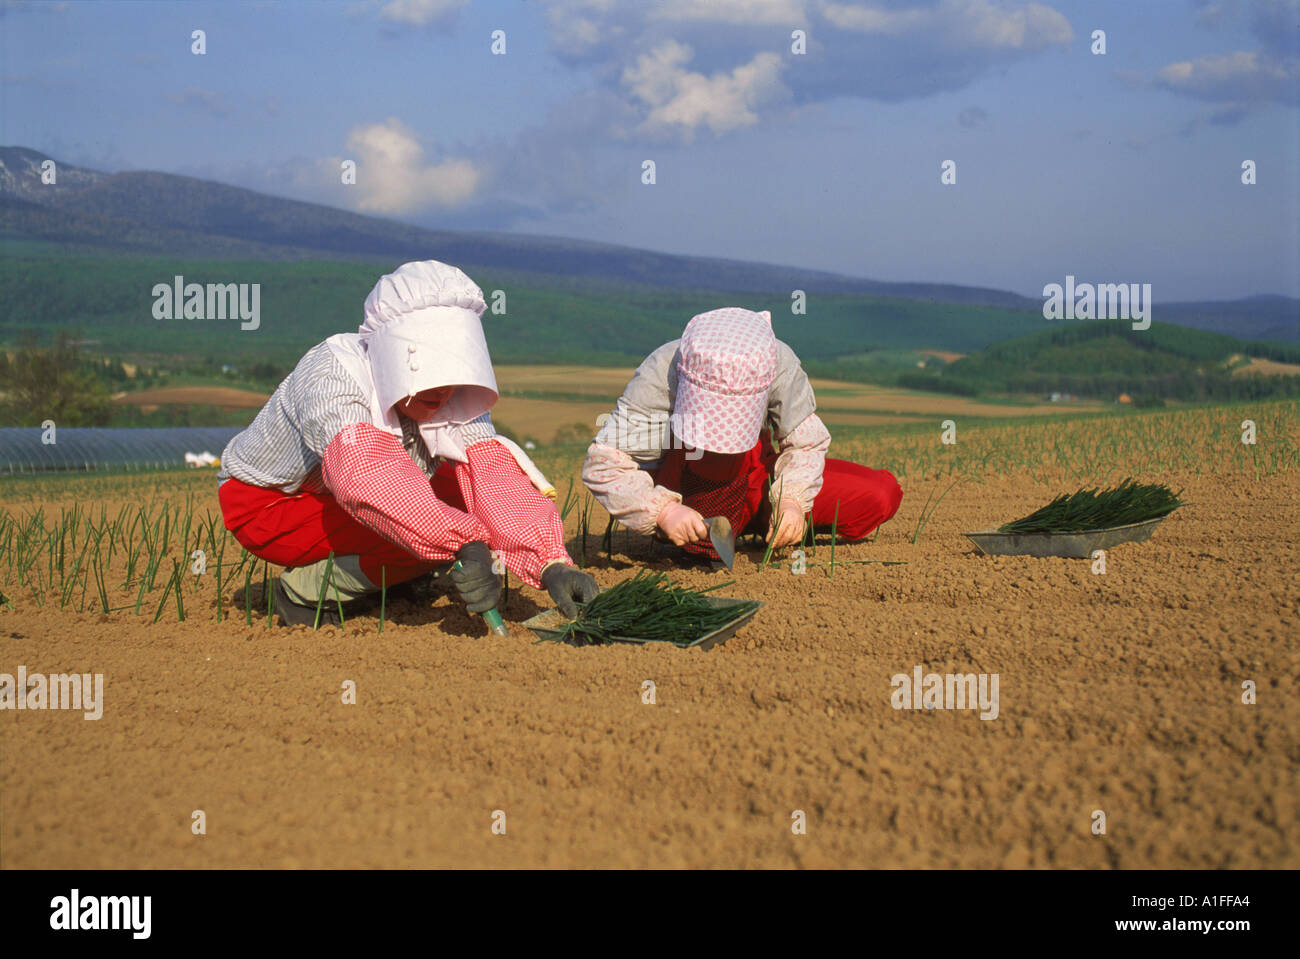 Deux femmes dans la plantation de bonnets dans un champ d'oignons sur Hokkaido Japon Asie G Hellier Banque D'Images